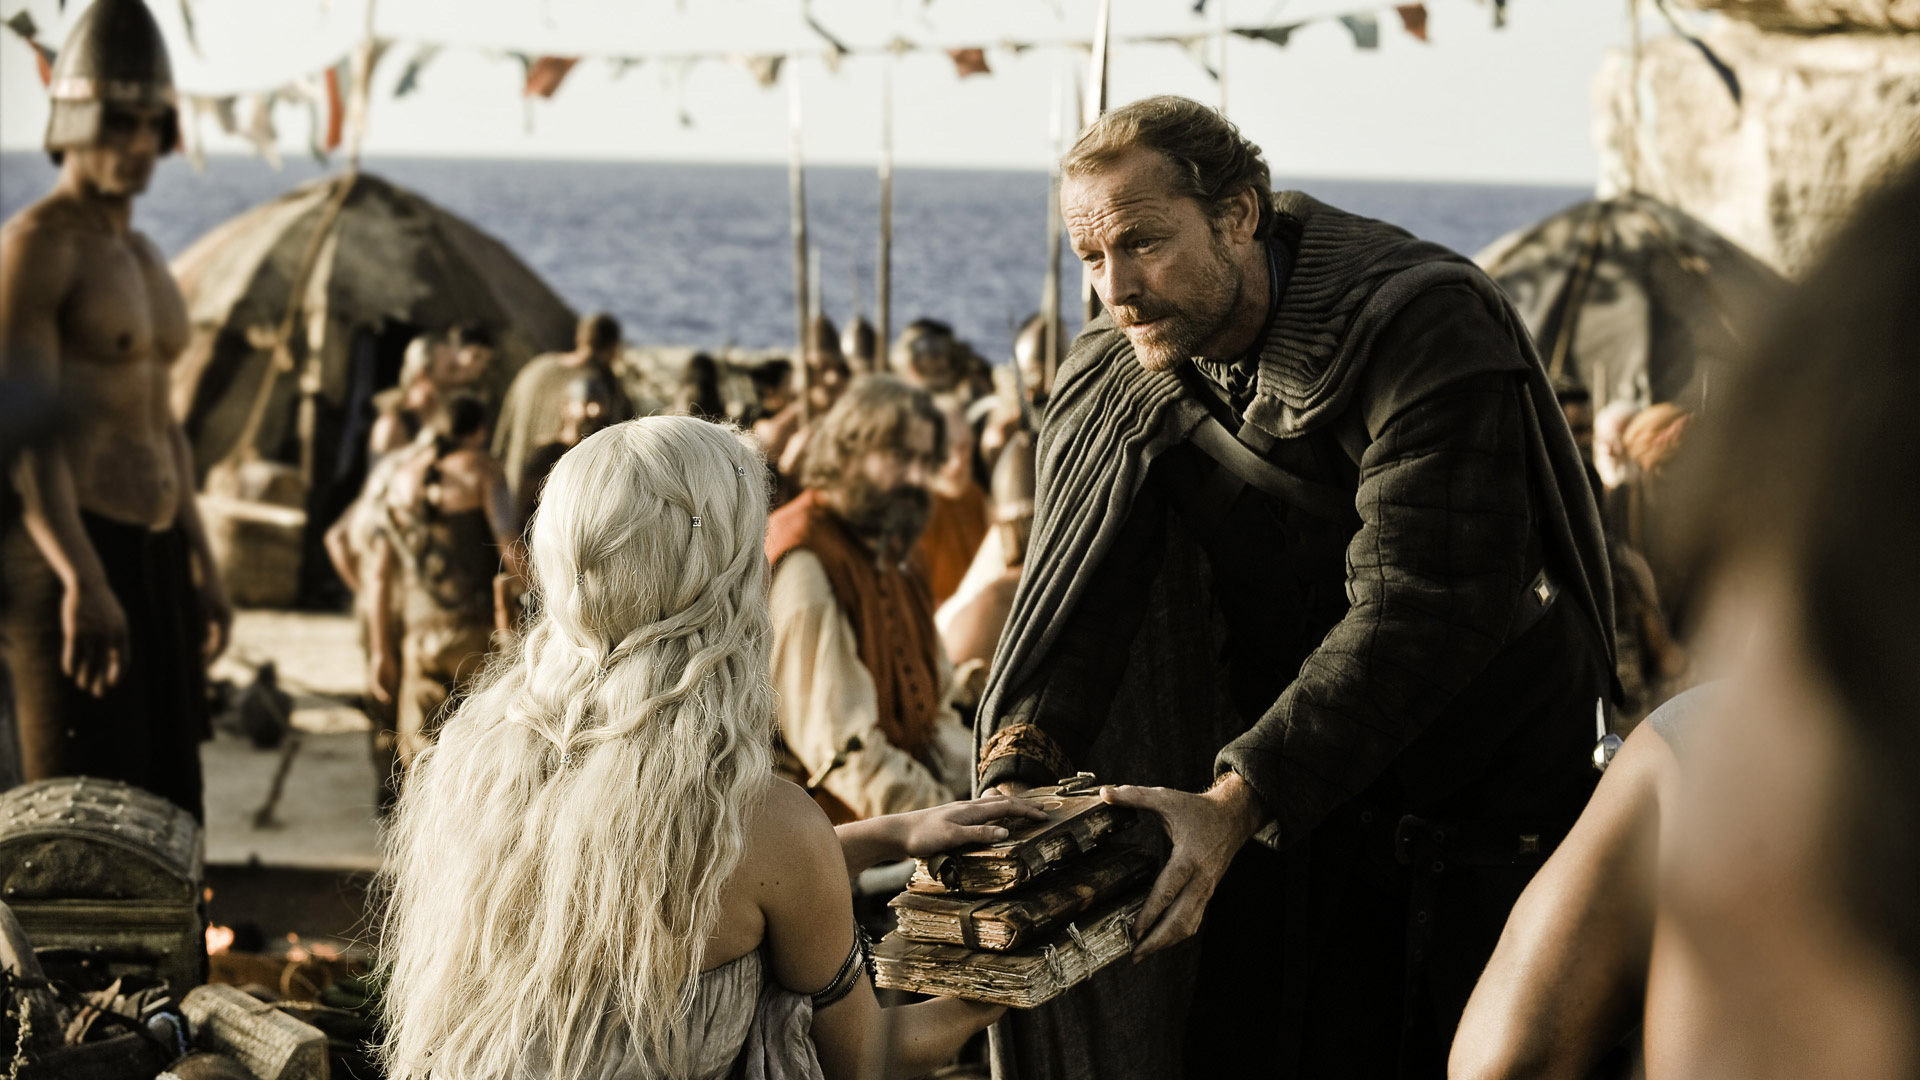 Download mobile wallpaper Game Of Thrones, Tv Show, Daenerys Targaryen, Emilia Clarke, Iain Glen, Jorah Mormont for free.